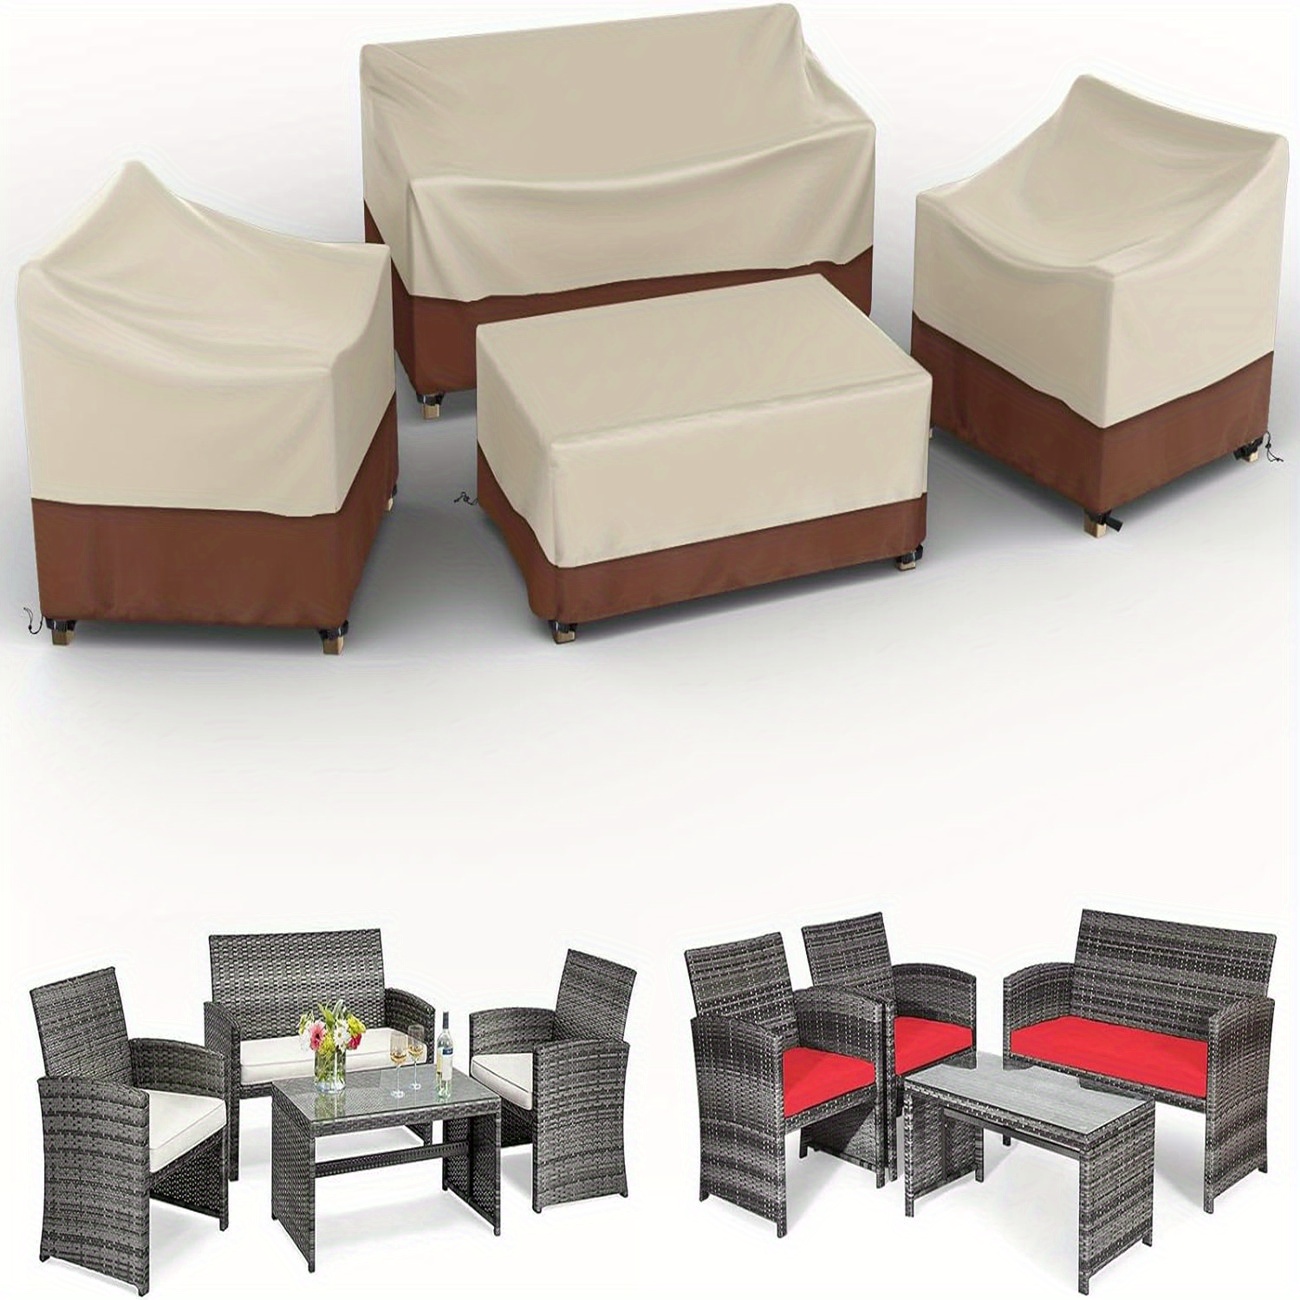  Fundas de muebles de patio impermeables para mesa y sillas,  funda cuadrada para muebles de exterior, antidecoloración, resistente al  desgarro/agua, 96 pulgadas de largo x 96 pulgadas de ancho x 28